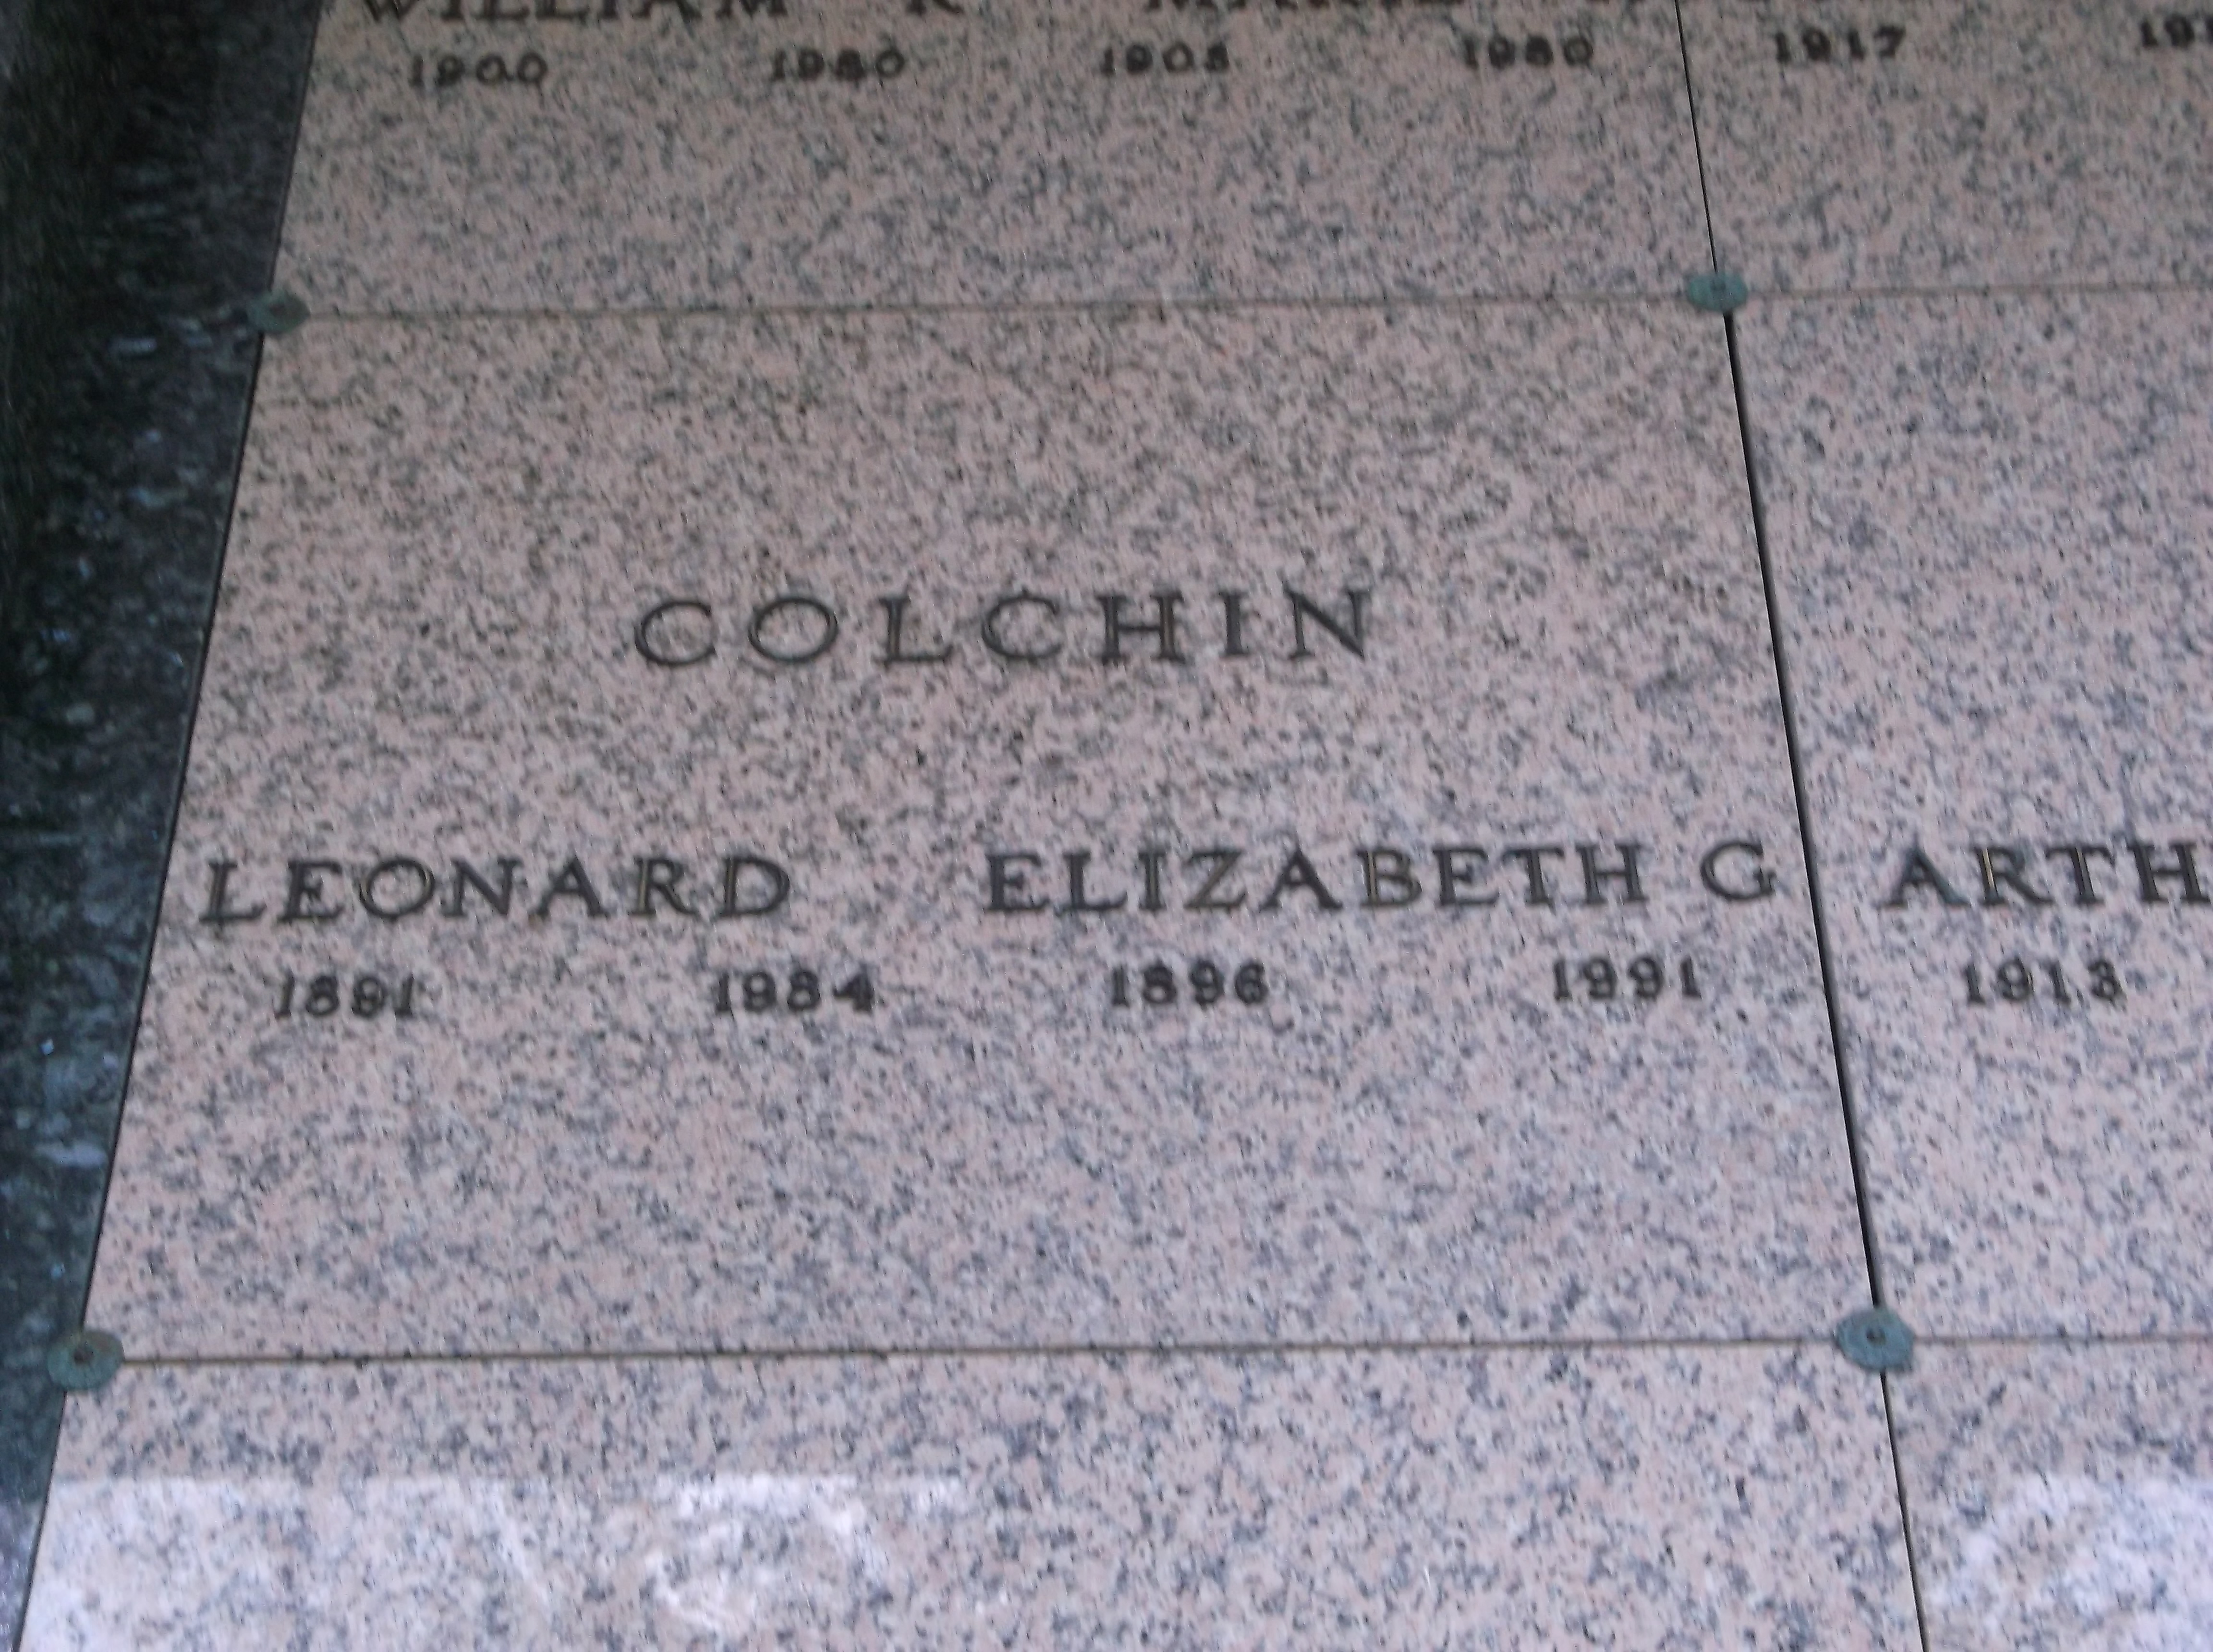 Elizabeth G Colchin